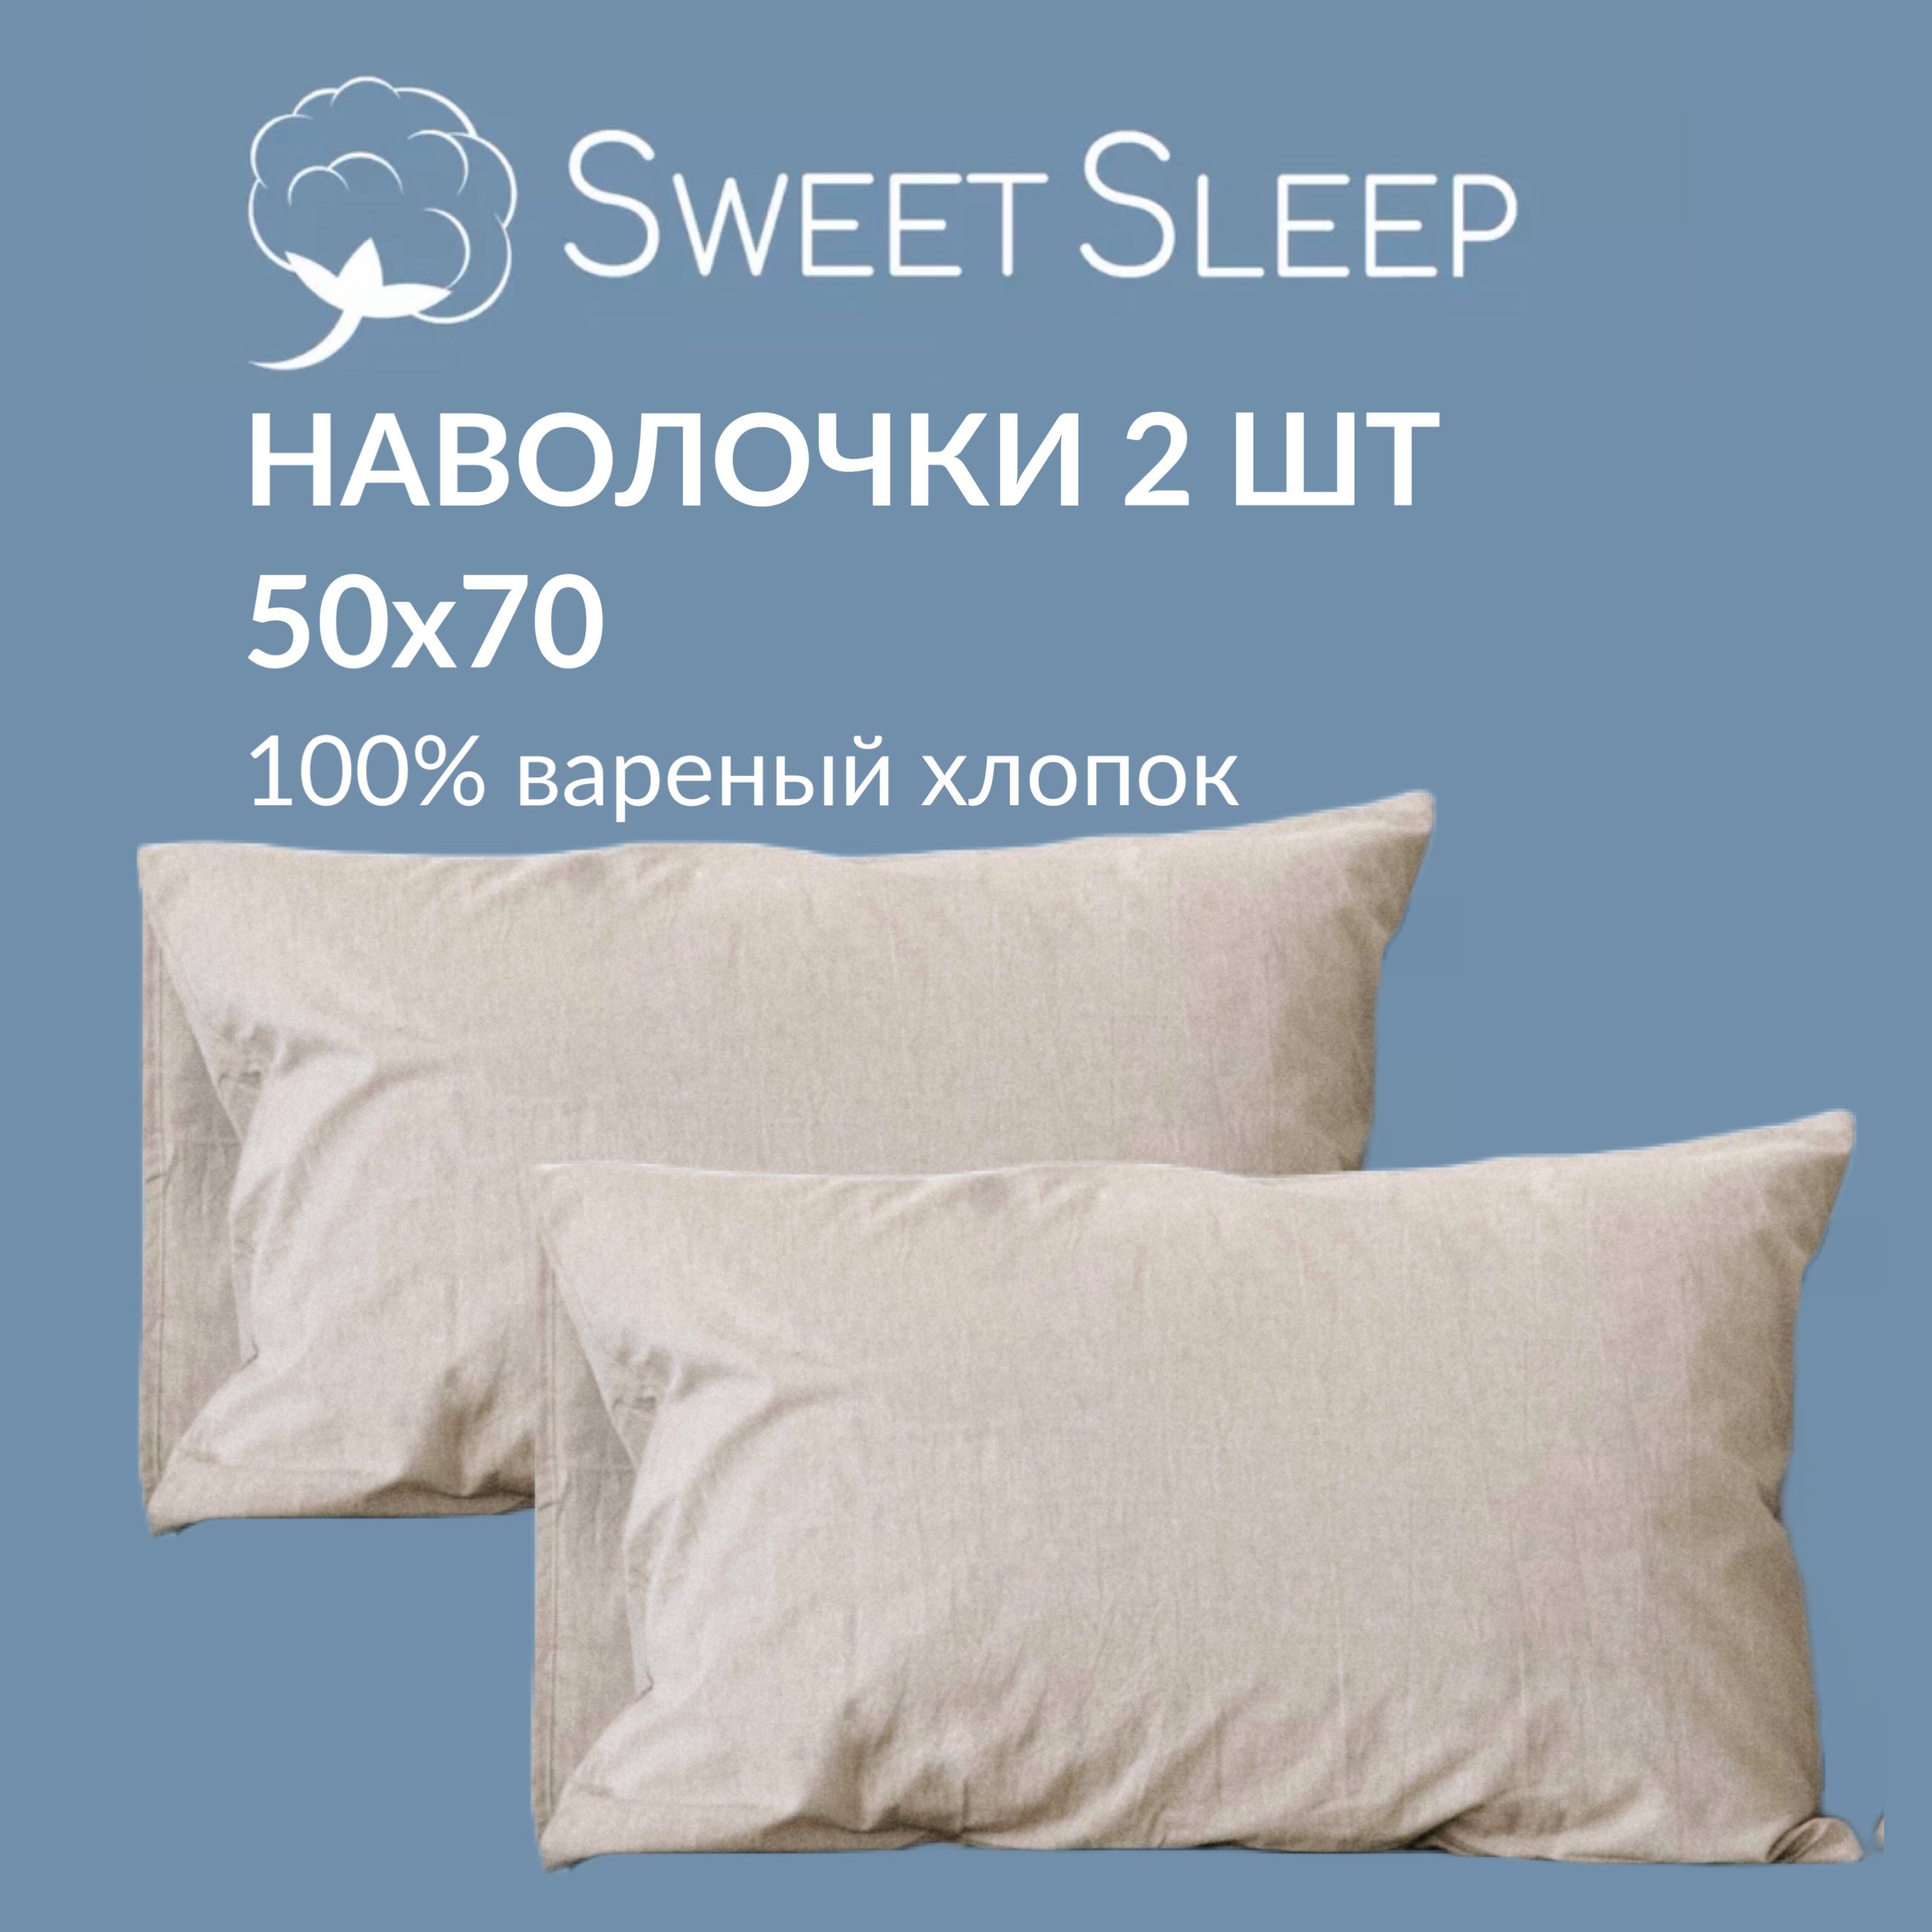 Набор наволочек Sweet Sleep варёный хлопок 50х70 см, светло-бежевый